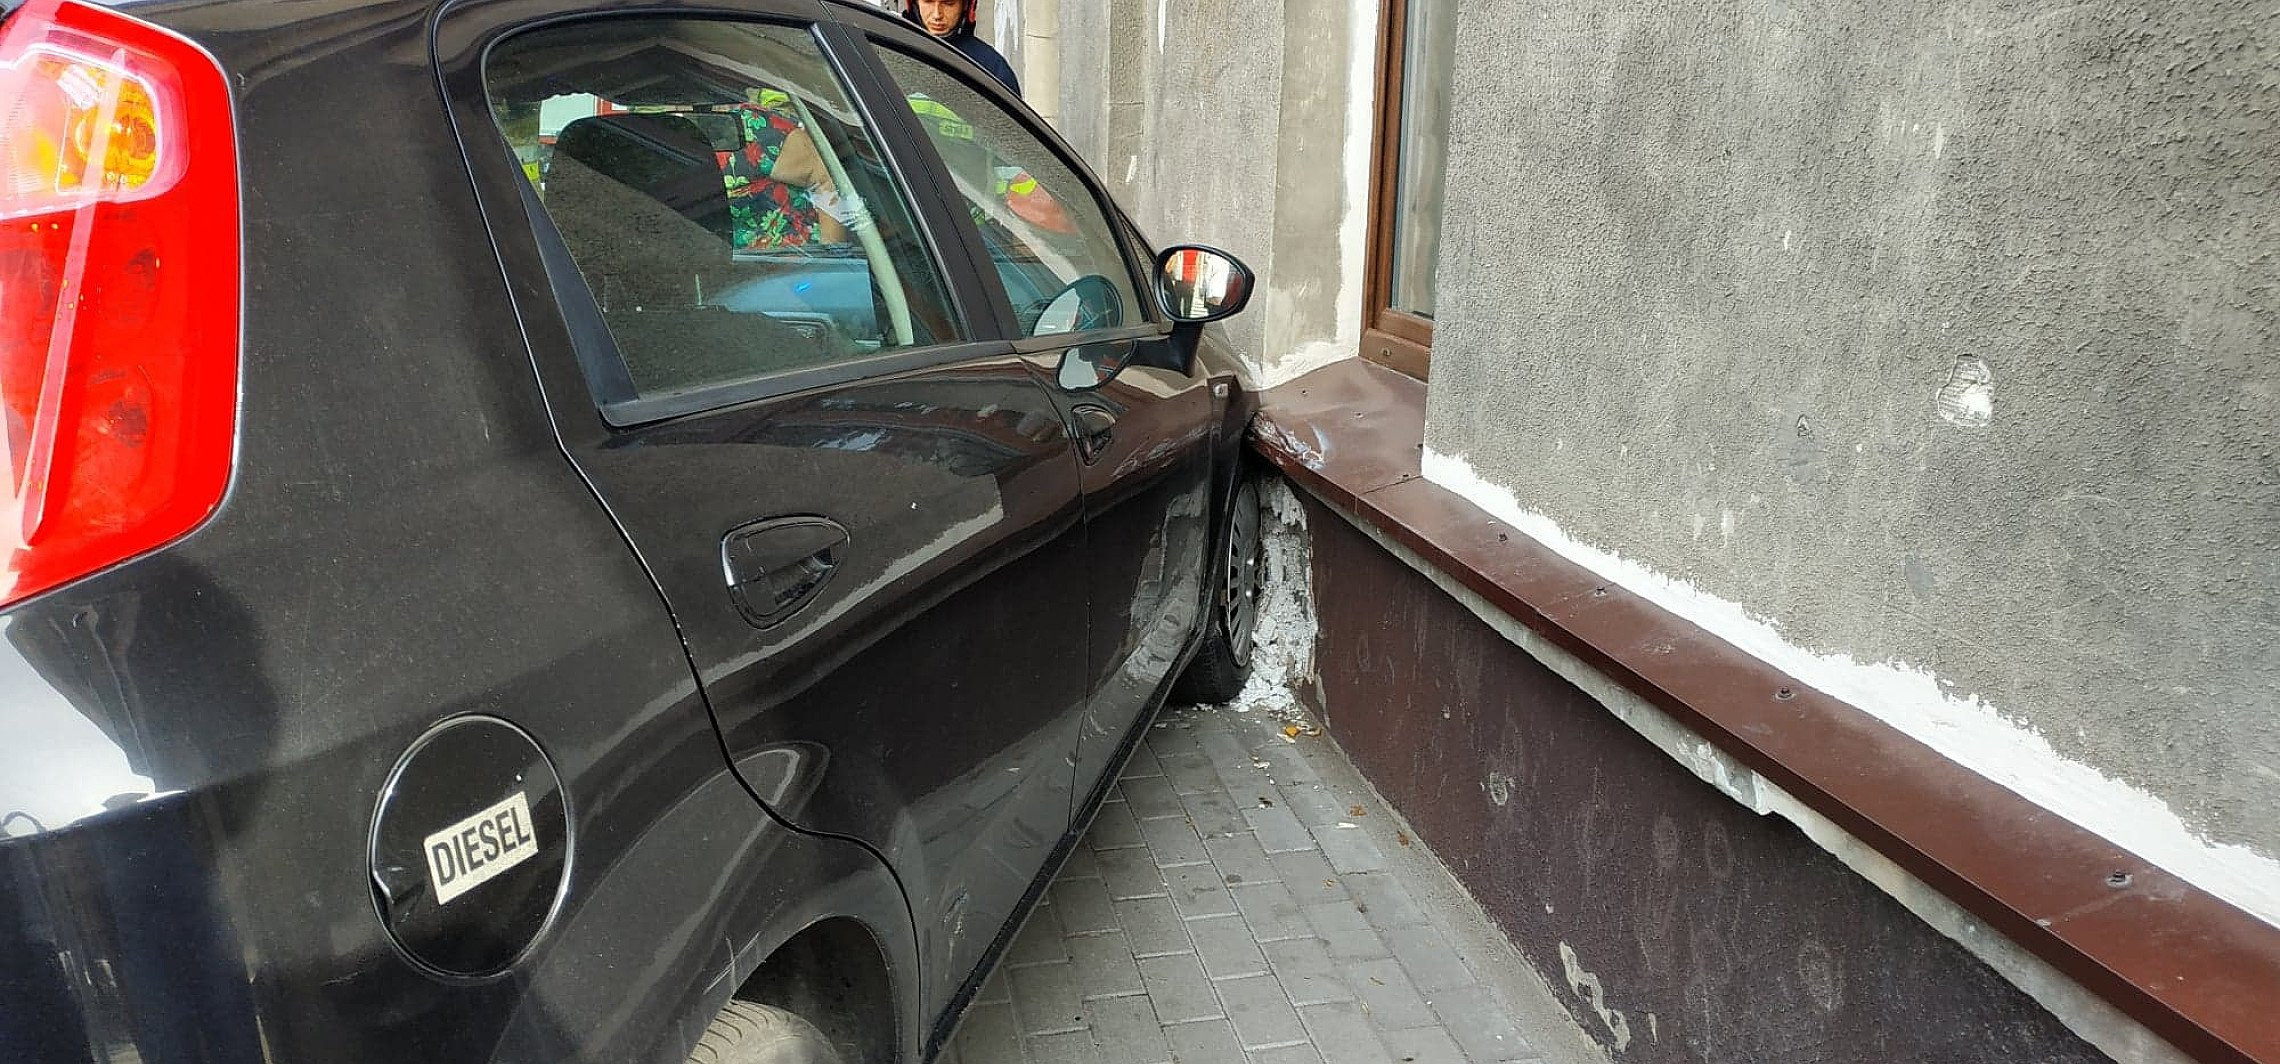 Inowrocław - W centrum miasta auto uderzyło w kamienicę